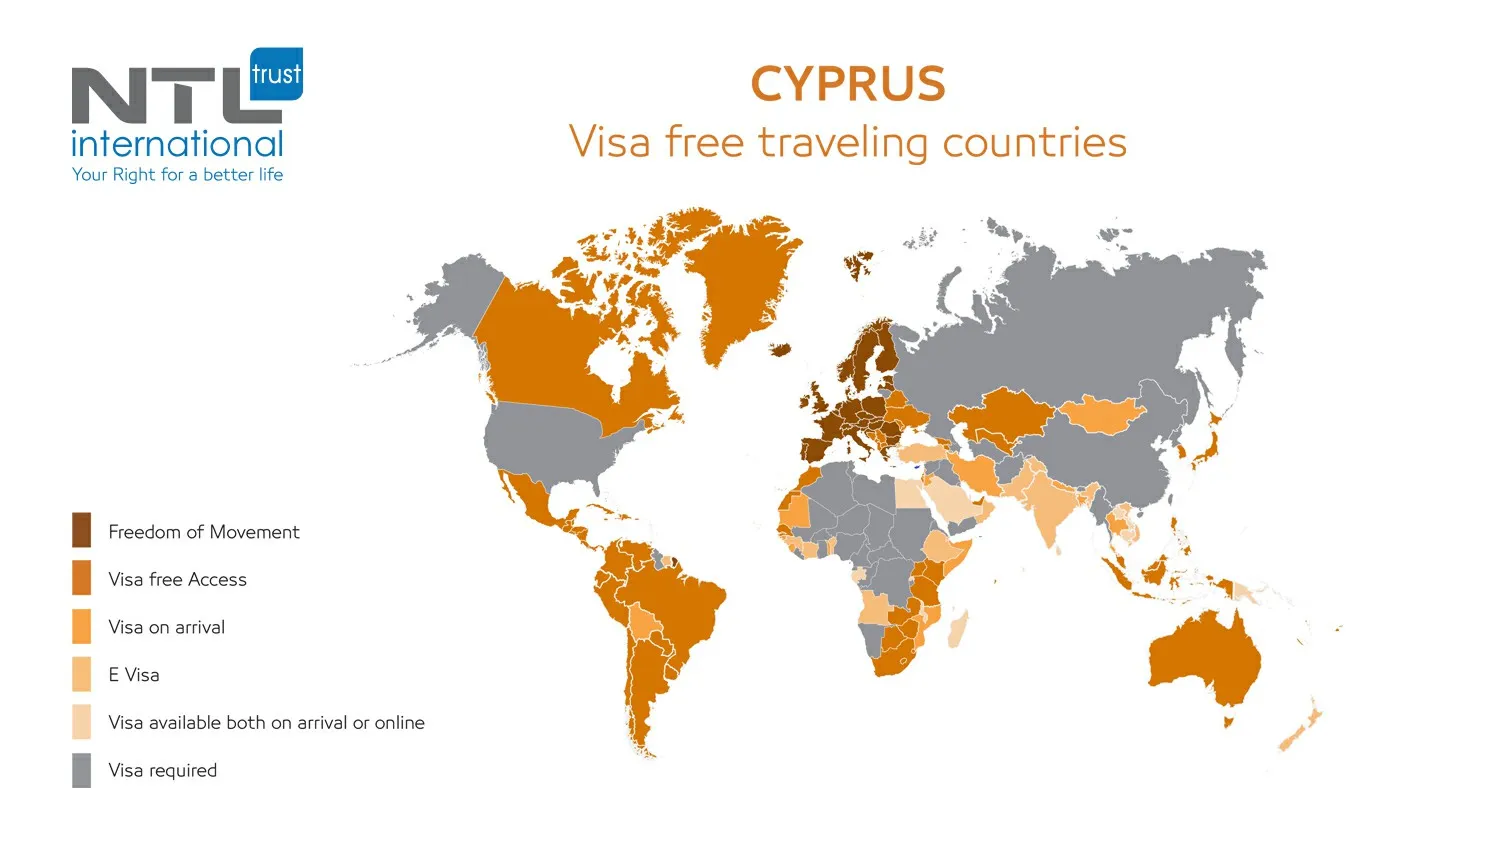 Cyprus Visa free traveling